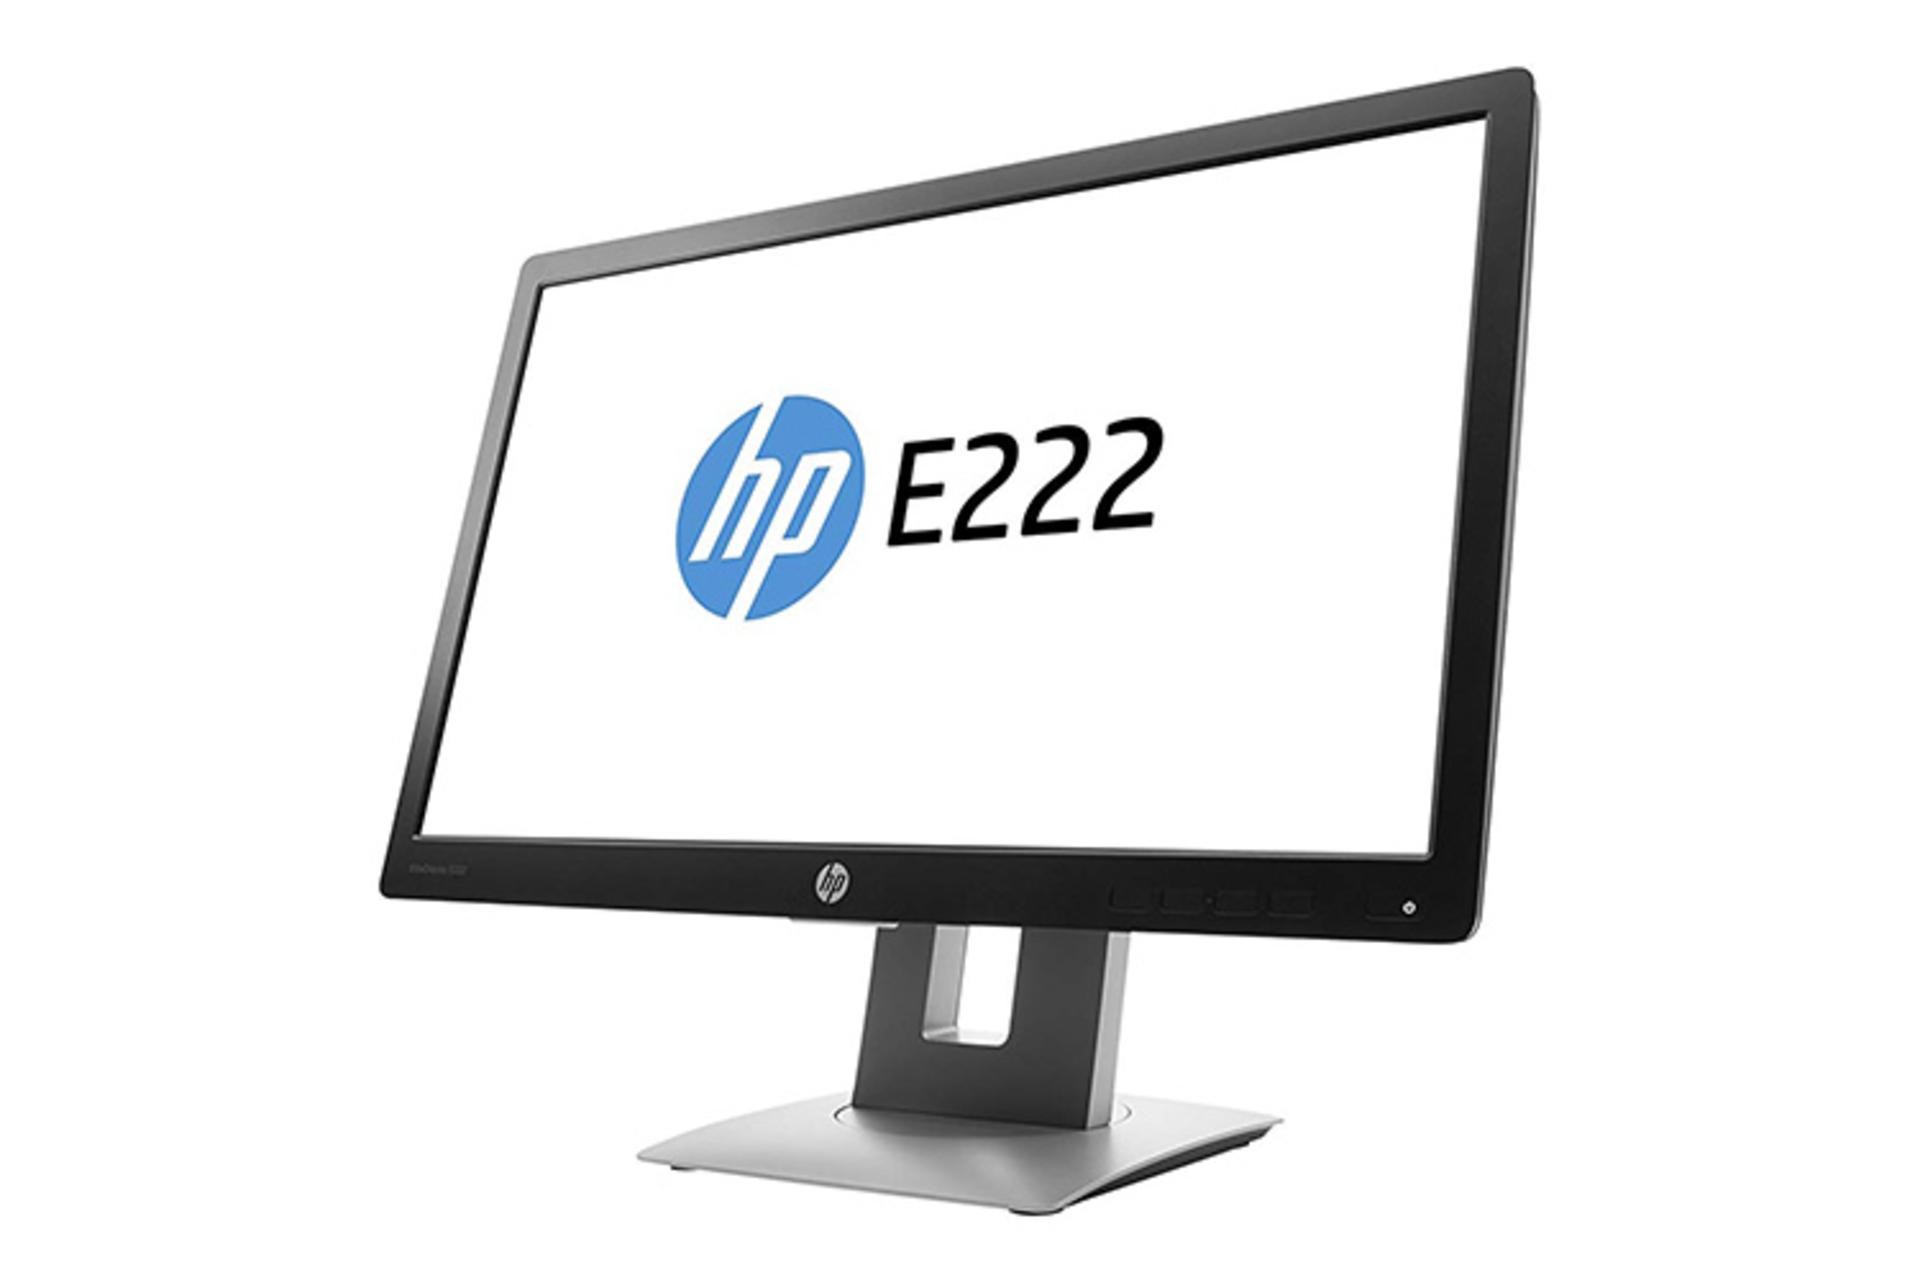 HP E222